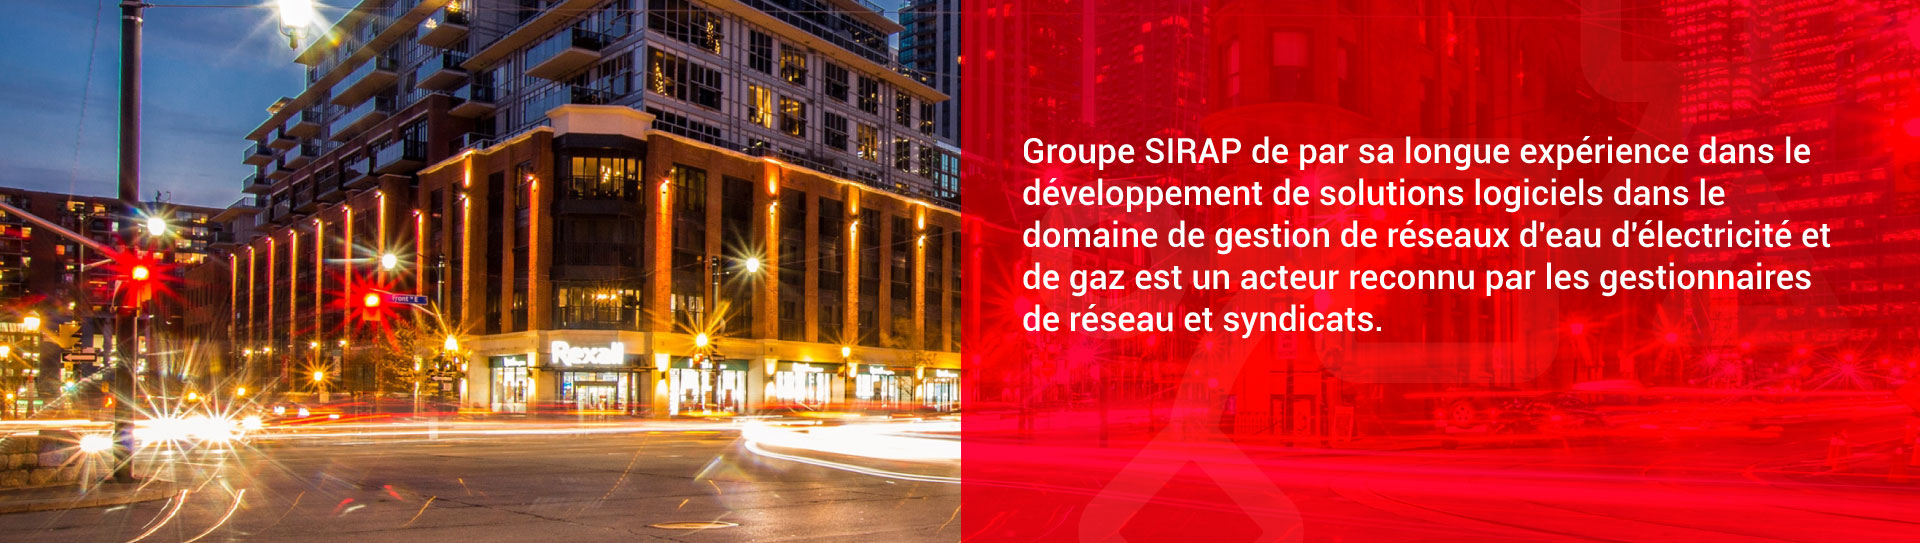 Groupe SIRAP est un acteur reconnu par les gestionnaires de réseau et syndicats.